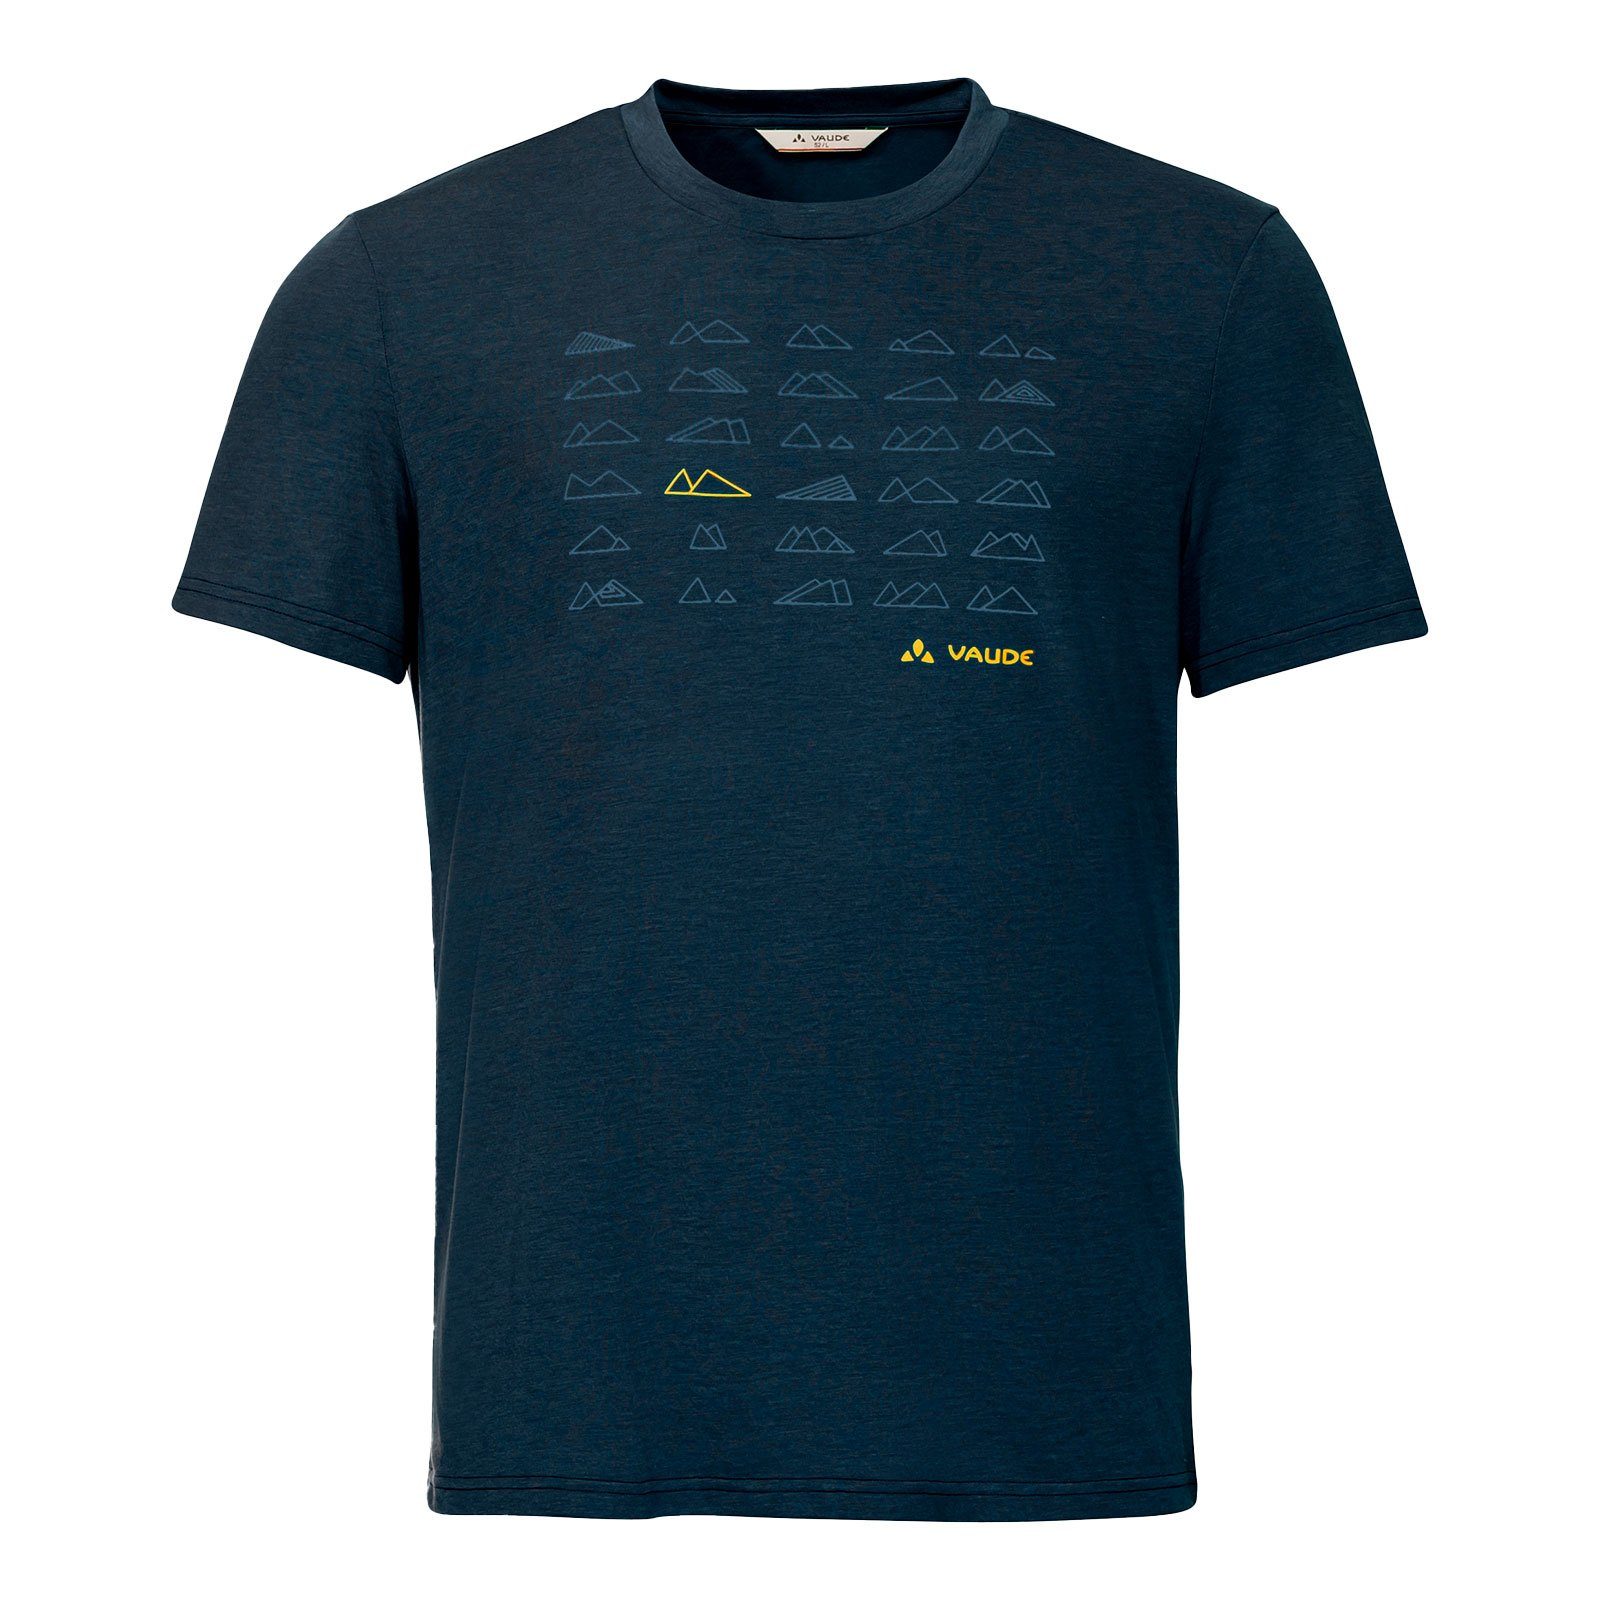 zu T-Shirt T-Shirt 42770-241 III dark 25% hergestellt sea aus blue Tekoa Holzfasern / VAUDE